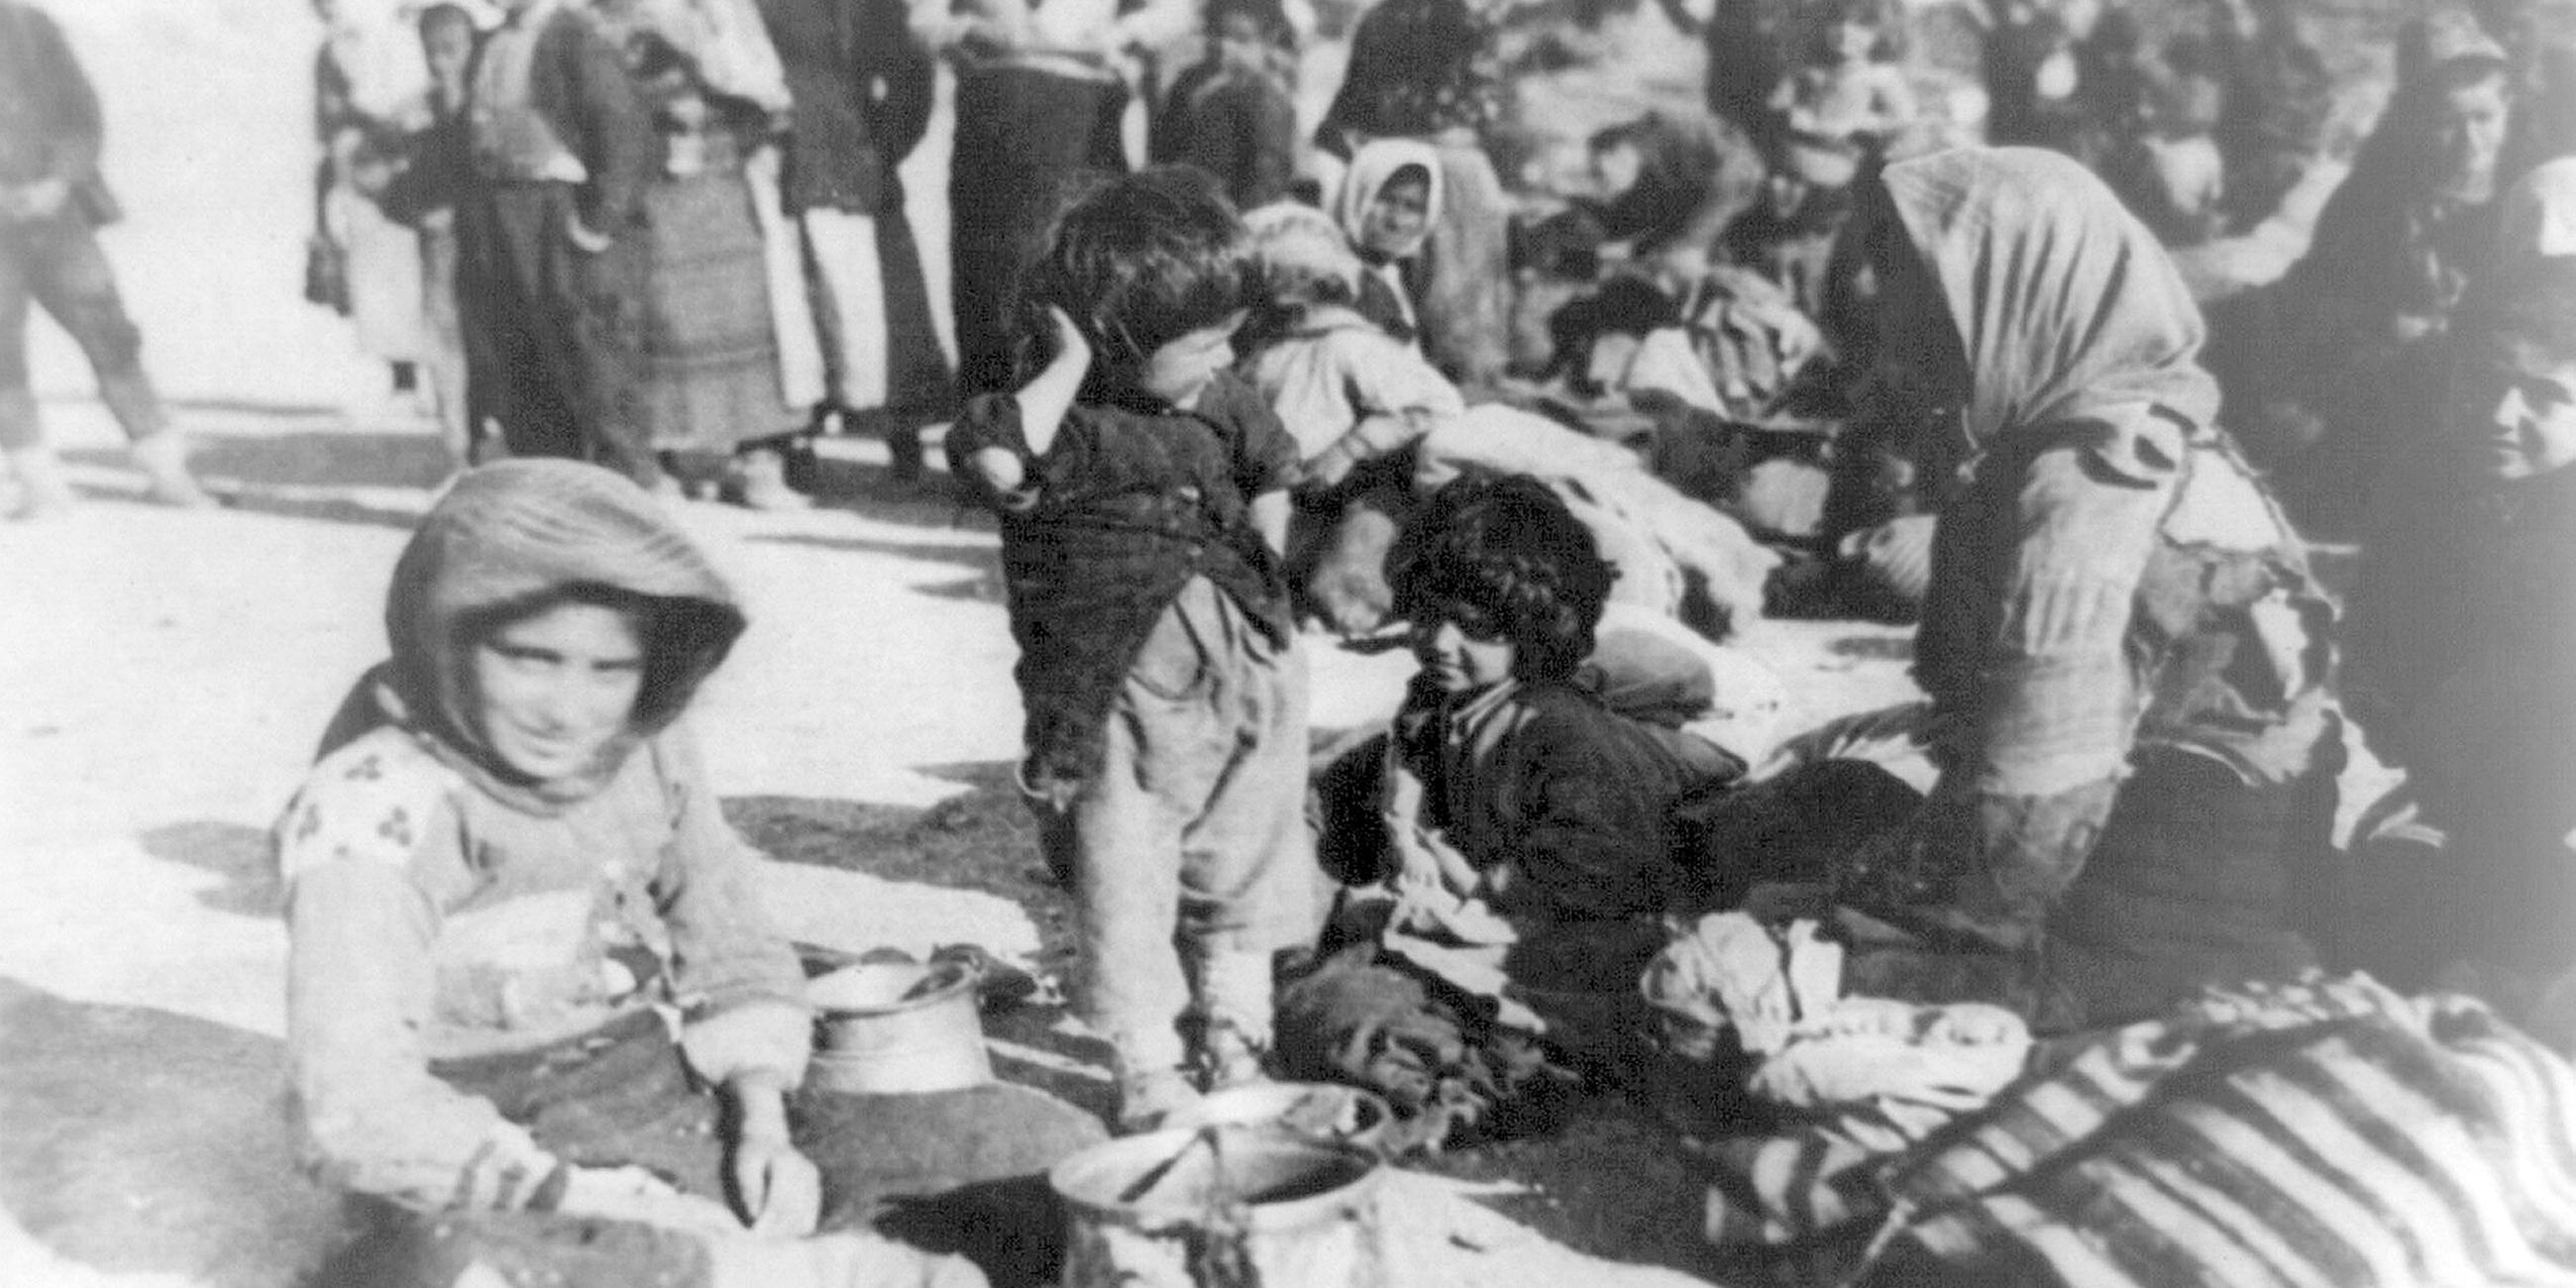 Archiv: Eine Gruppe armenischer Flüchtlinge aus dem Osmanischen Reich sitzt 1915 in Syrien auf dem Boden